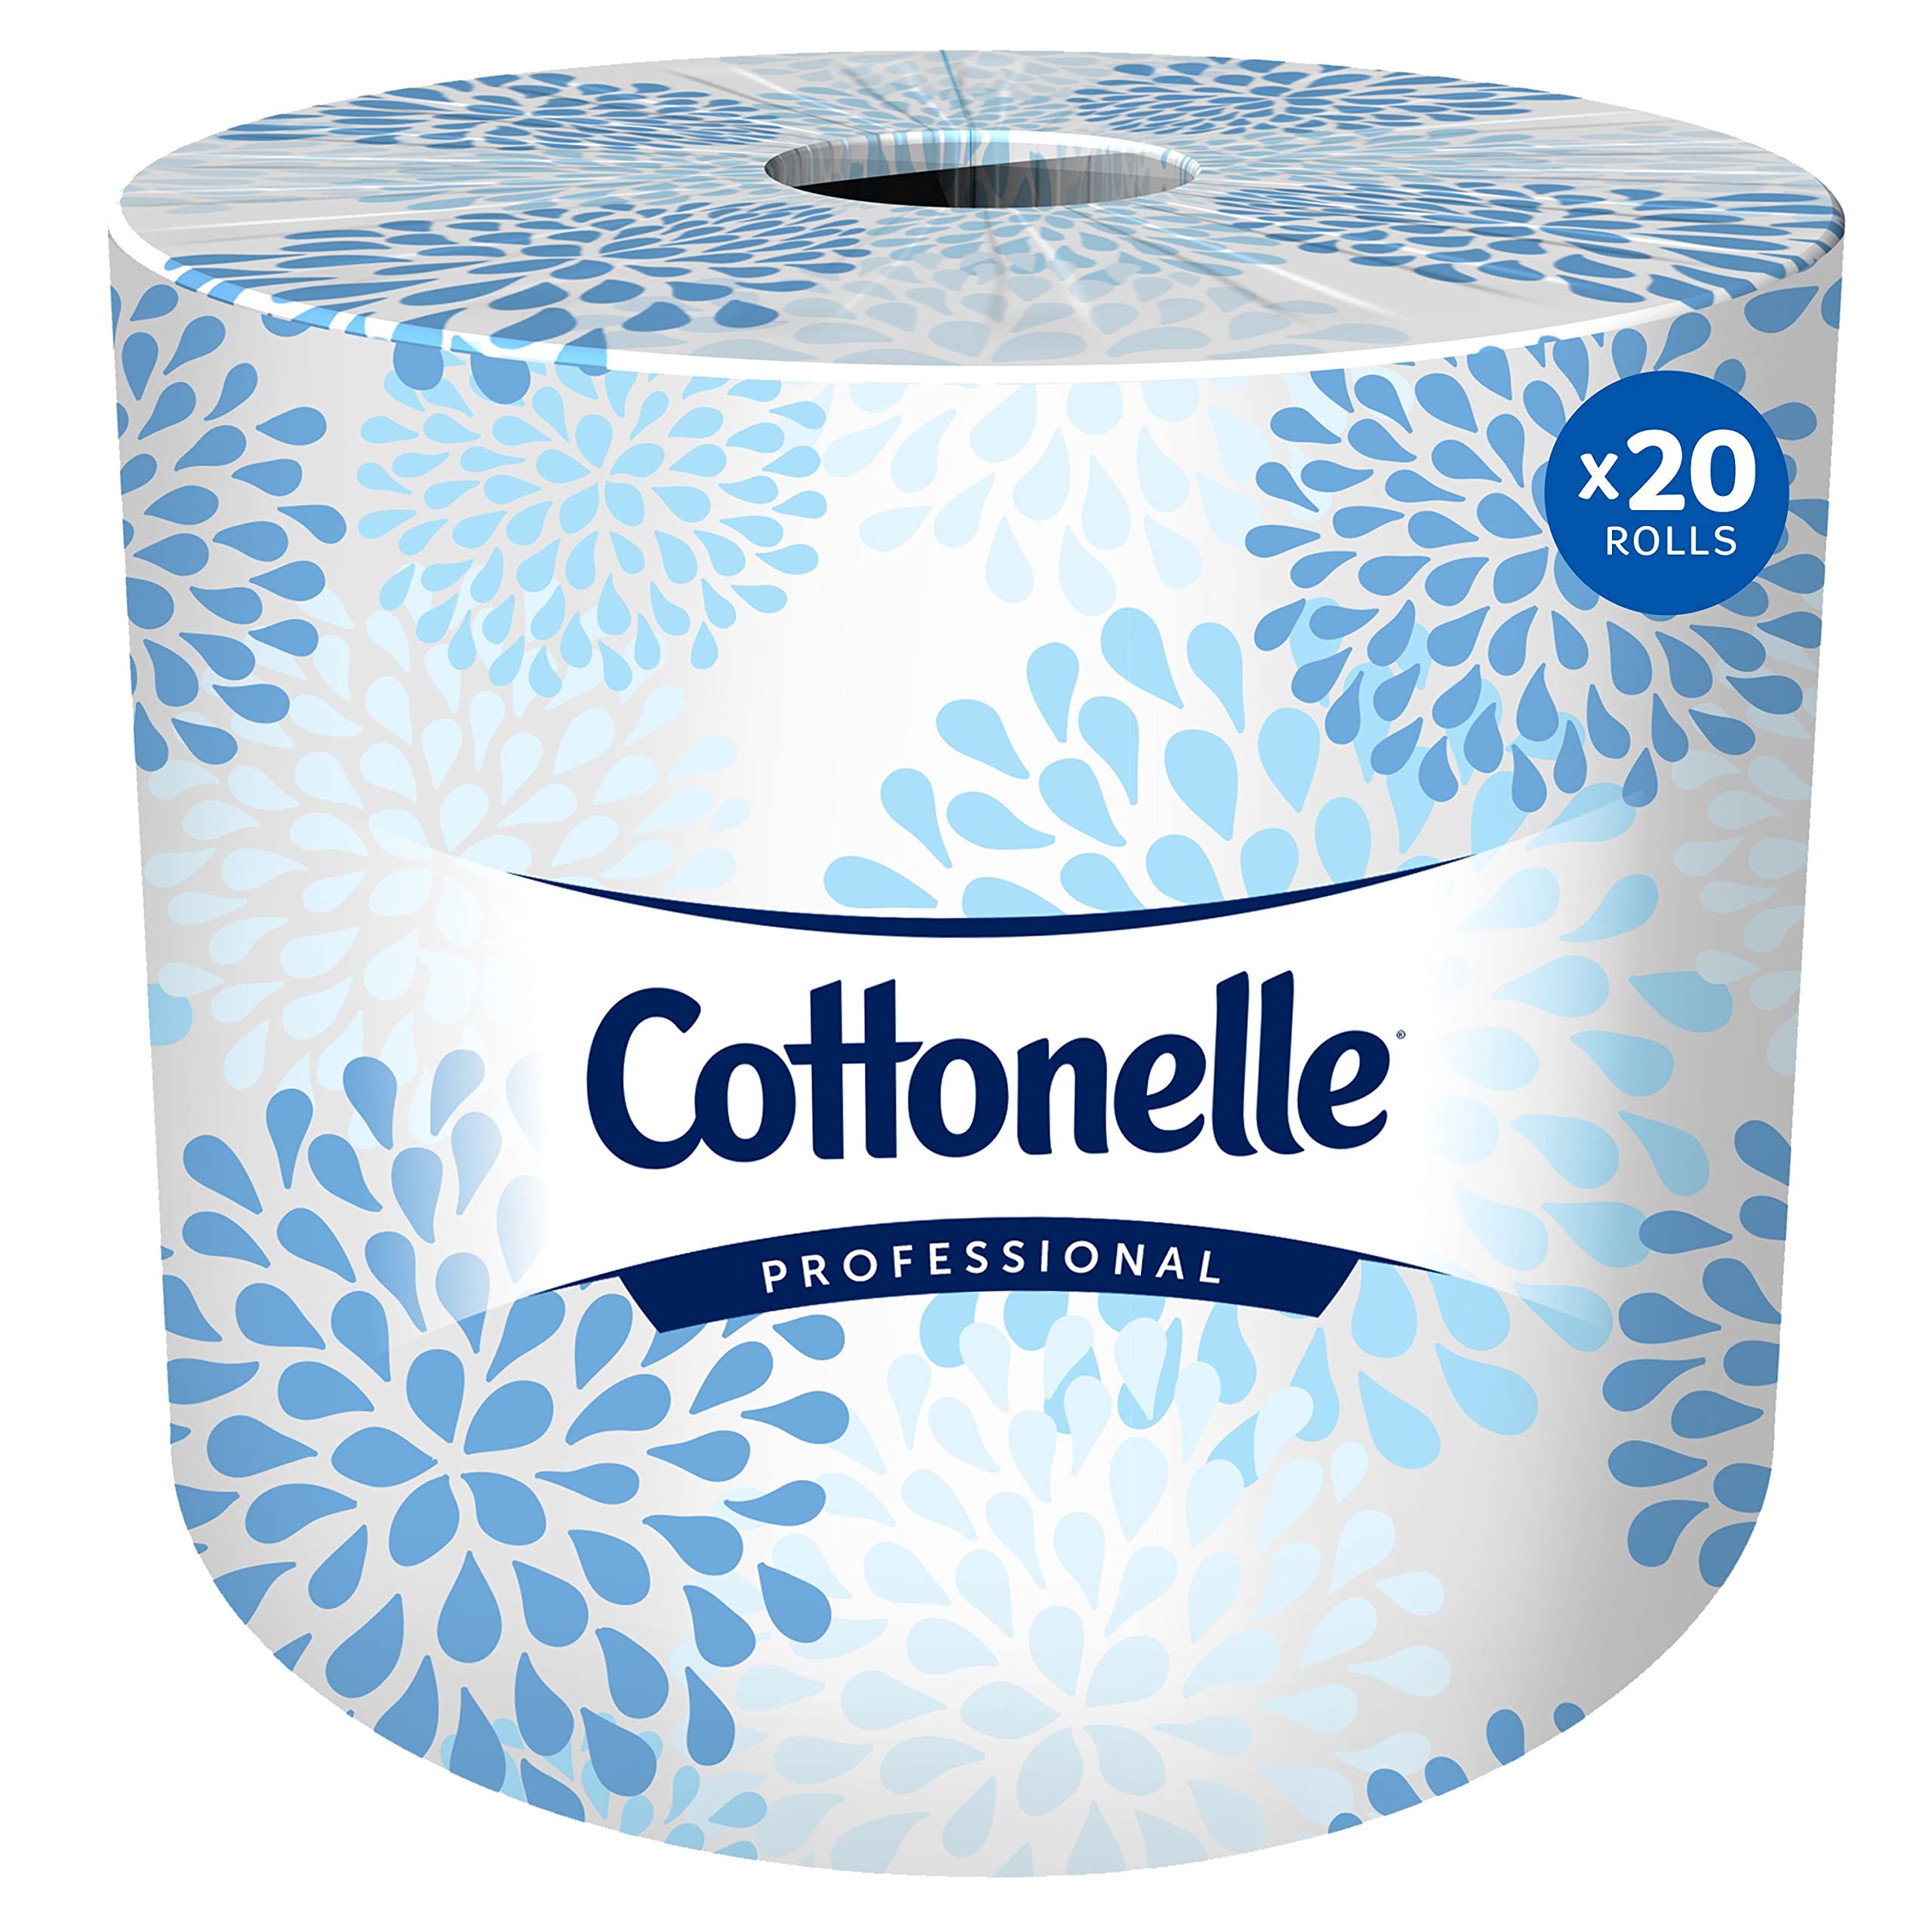 Cottonelle Professionelles Standard-Toilettenpapier in Rollenform